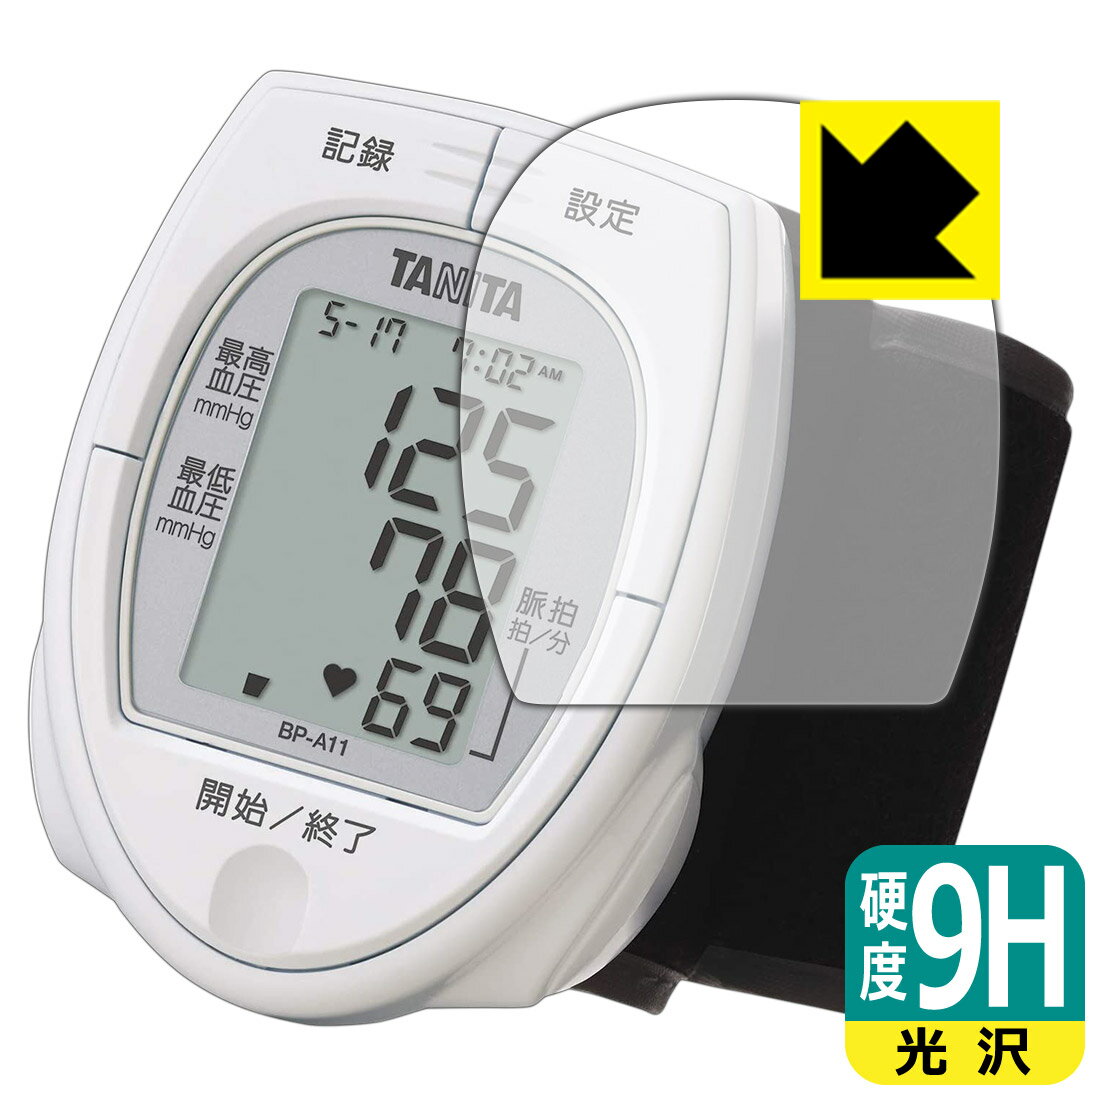 9H高硬度【光沢】保護フィルム タニタ手首式血圧計 BP-A11 用 日本製 自社製造直販